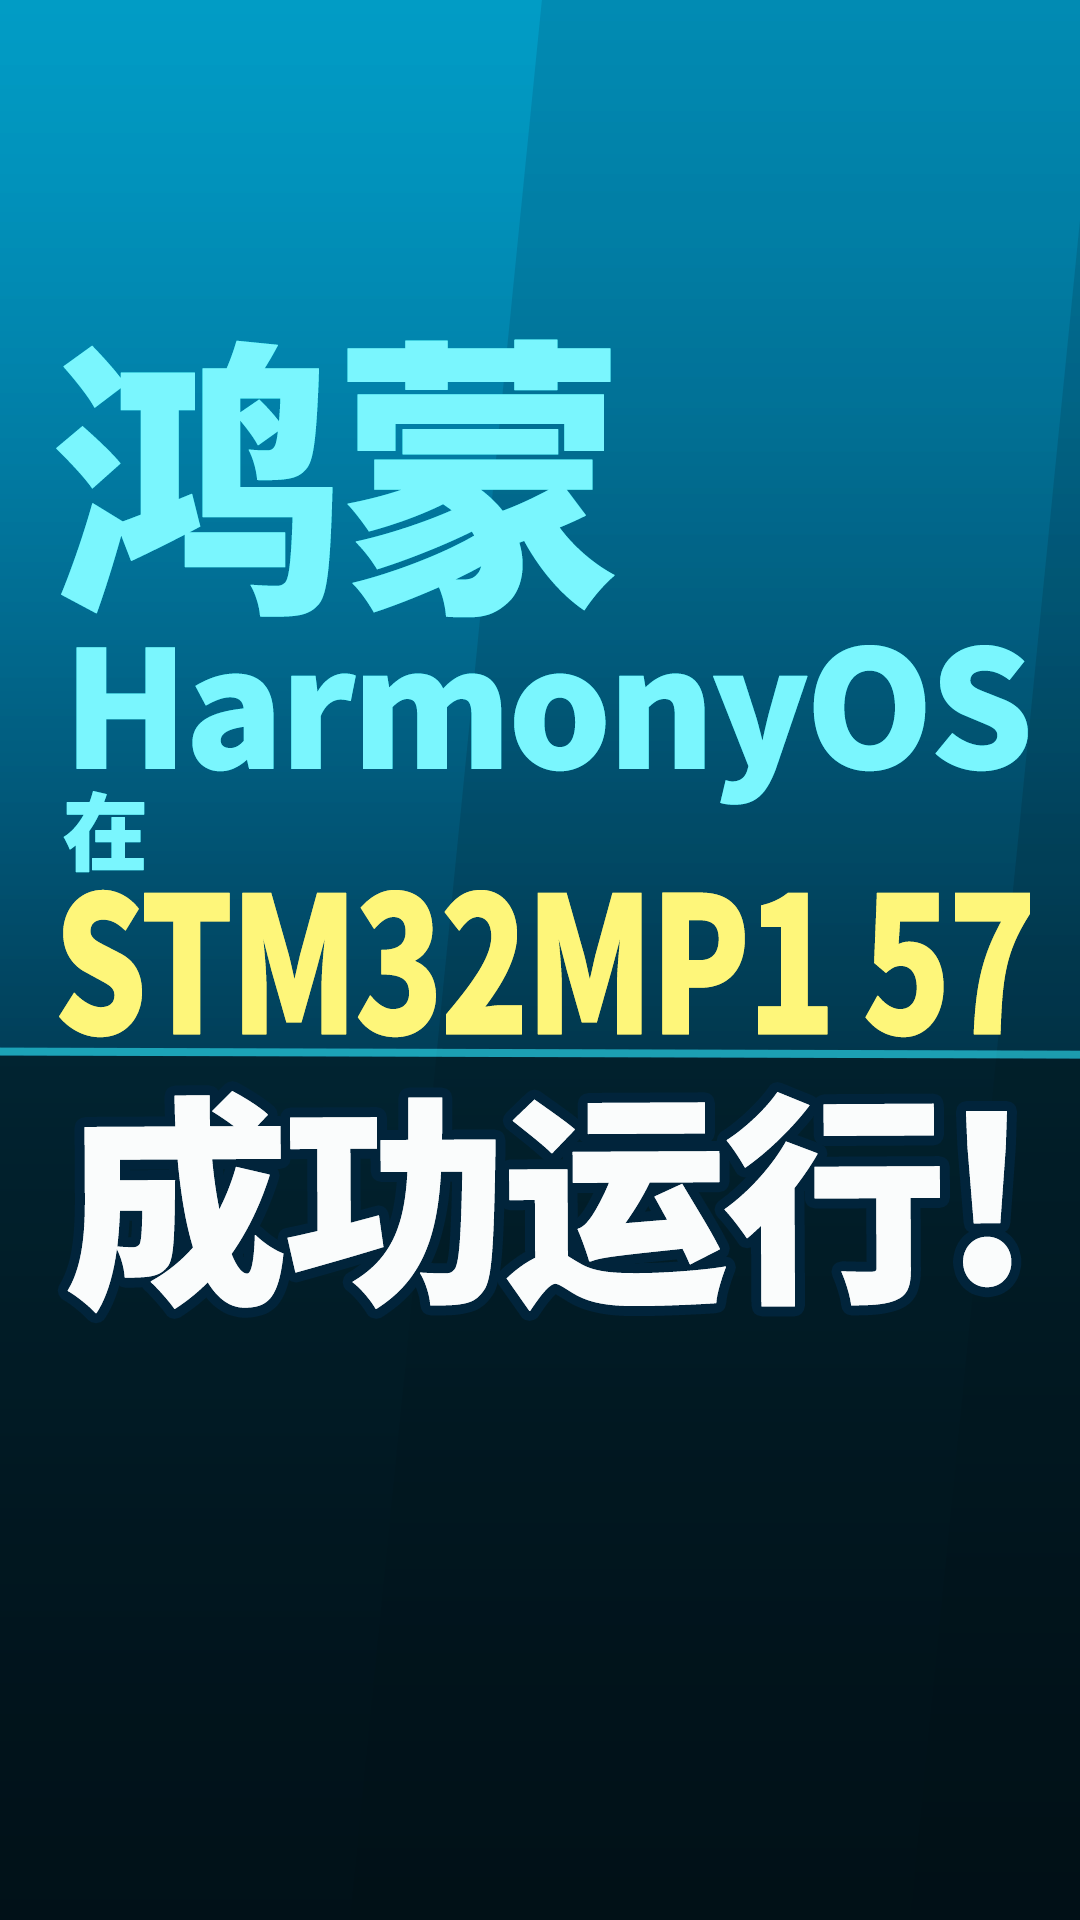 鸿蒙系统在STM32MP157上成功运行#嵌入式开发 